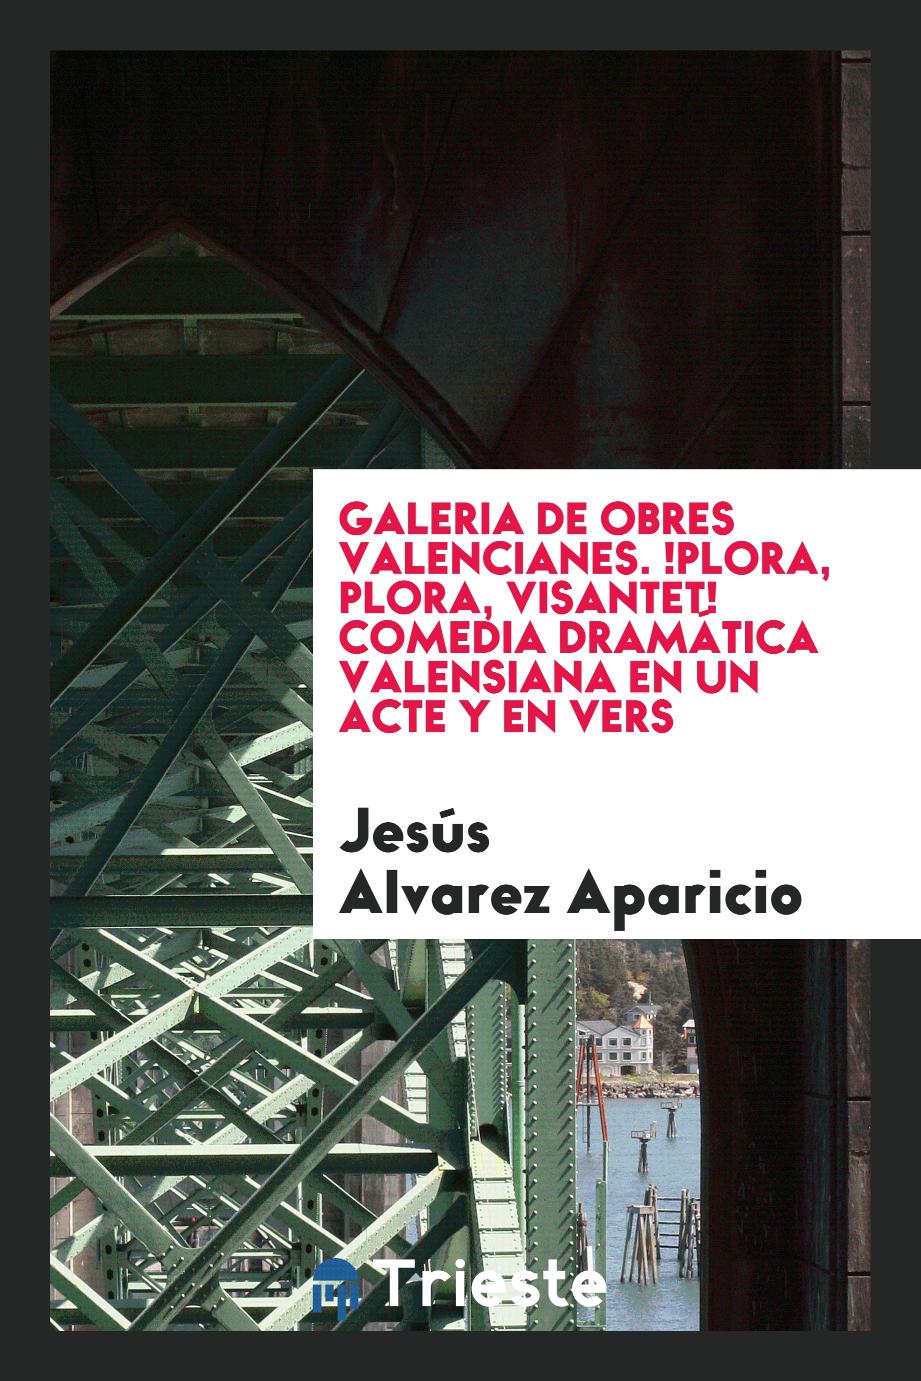 Galeria de Obres Valencianes. !Plora, plora, Visantet! Comedia dramática valensiana en un acte y en vers